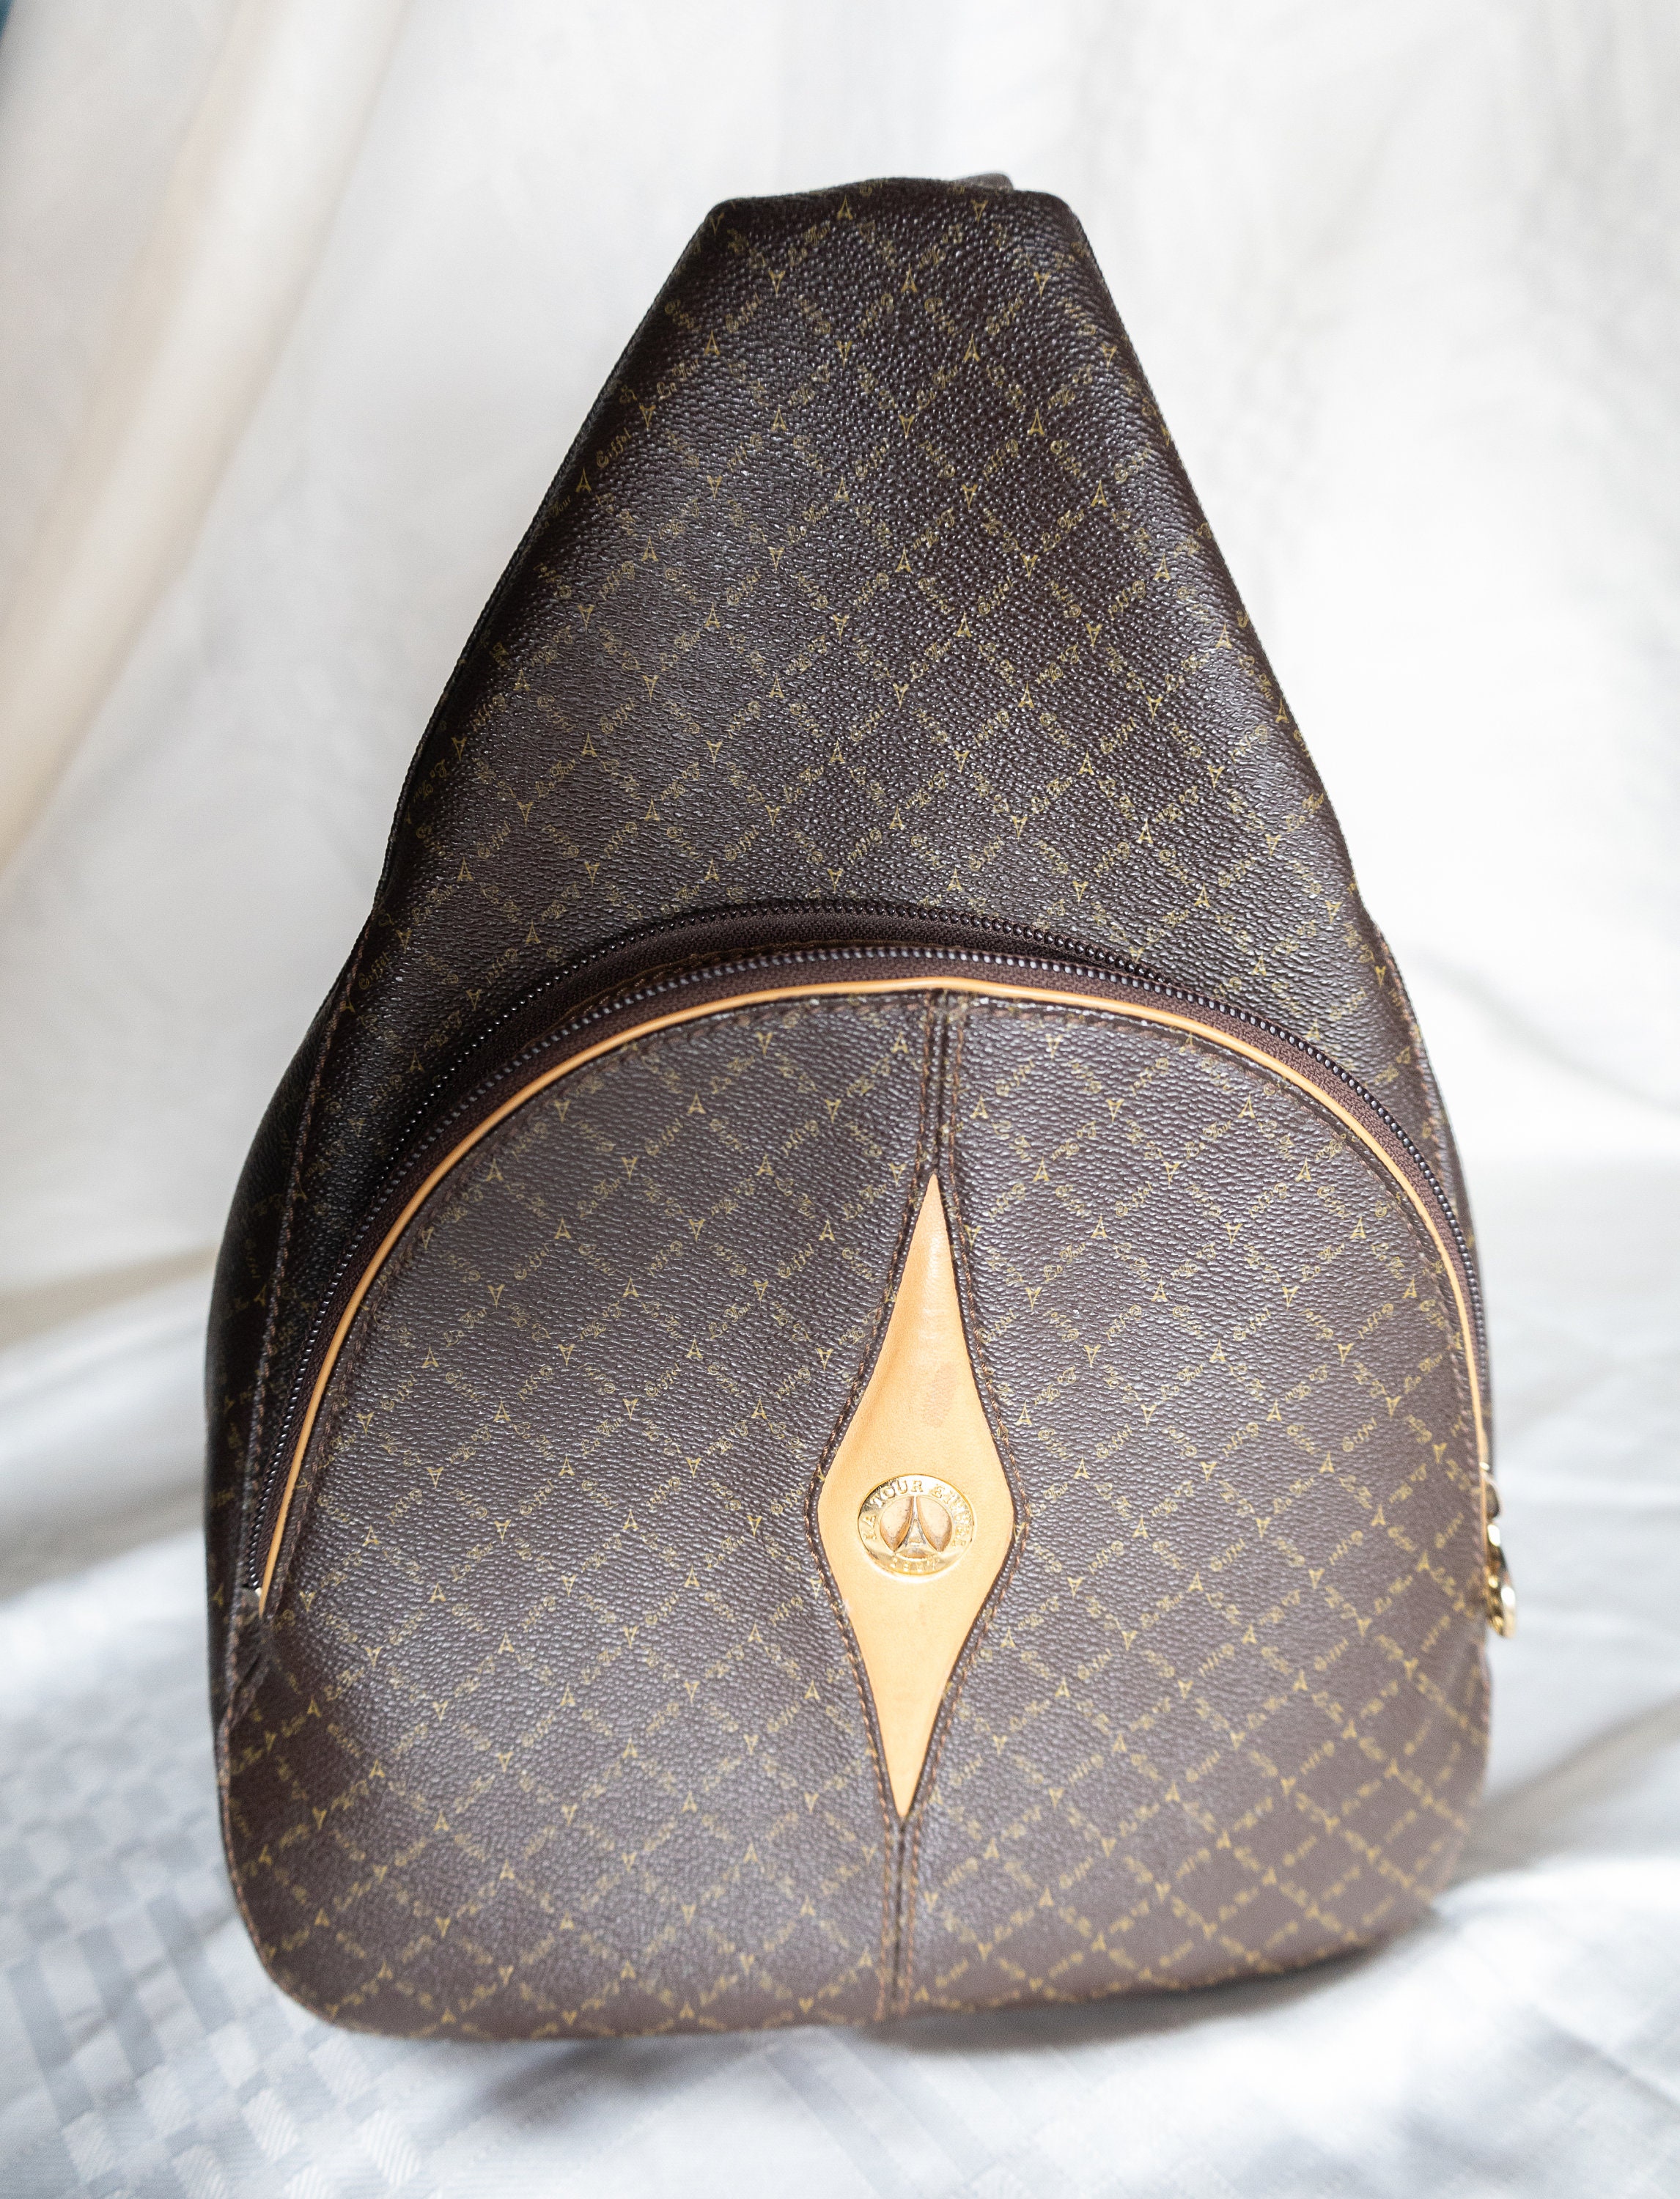 LA TOUR EIFFEL PARIS Monogram Black Ivory Leather Shoulder bag Purse | eBay